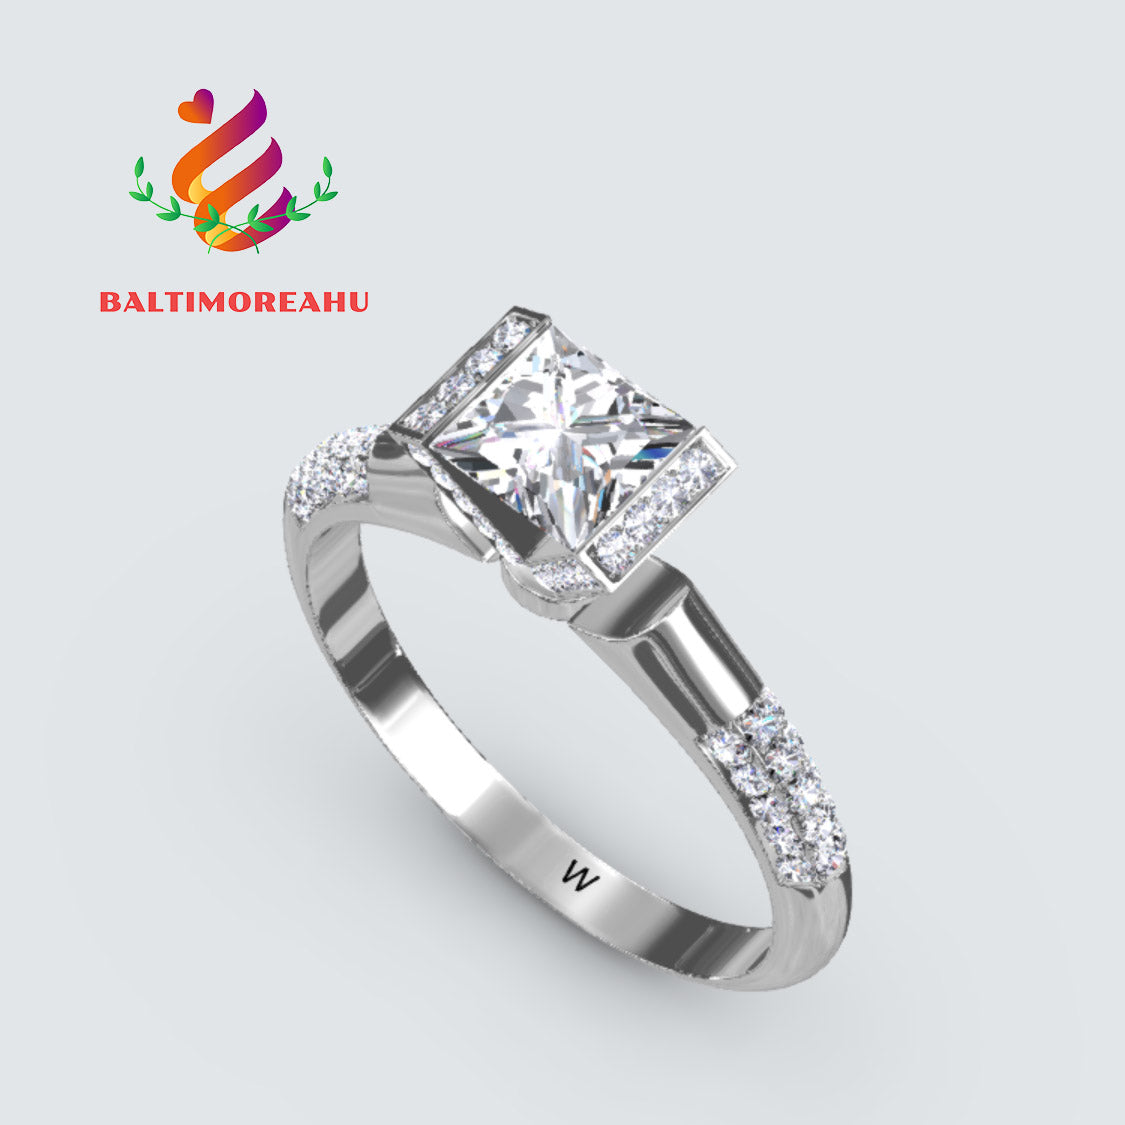 Baltimoreahu diamond square wedding ring